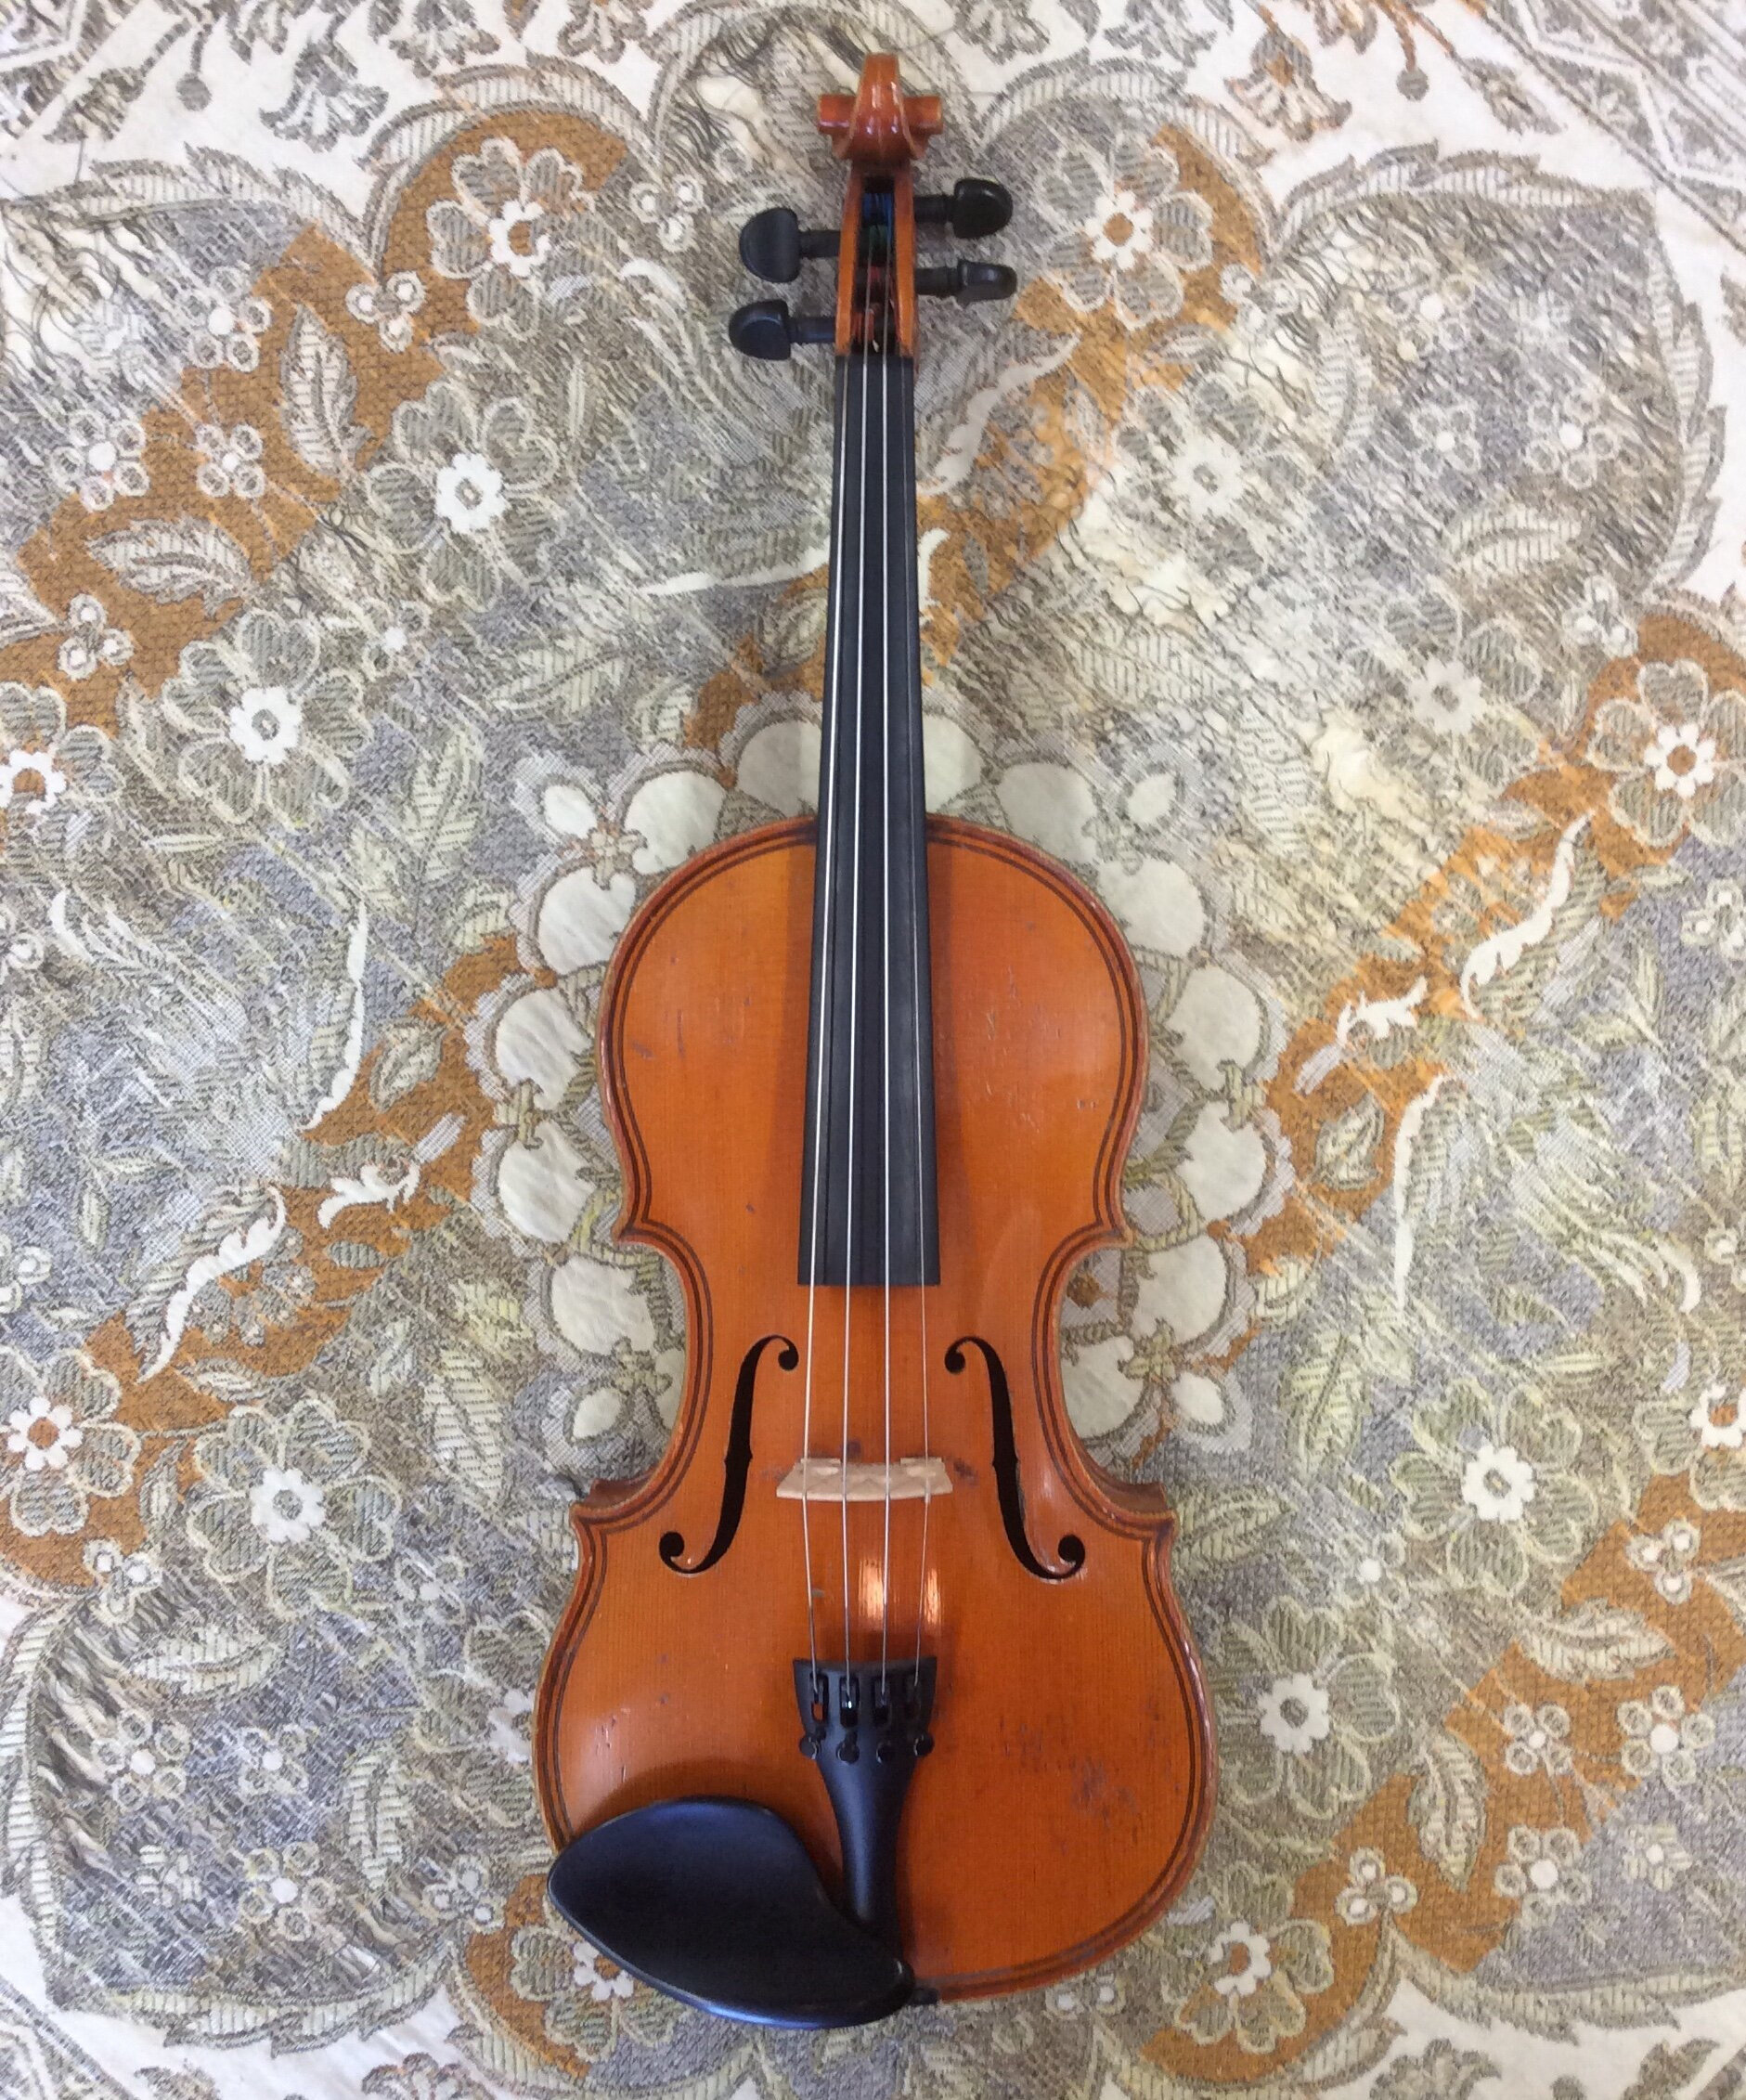 $1000 - $3000 — Tulsa Strings Violin Shop